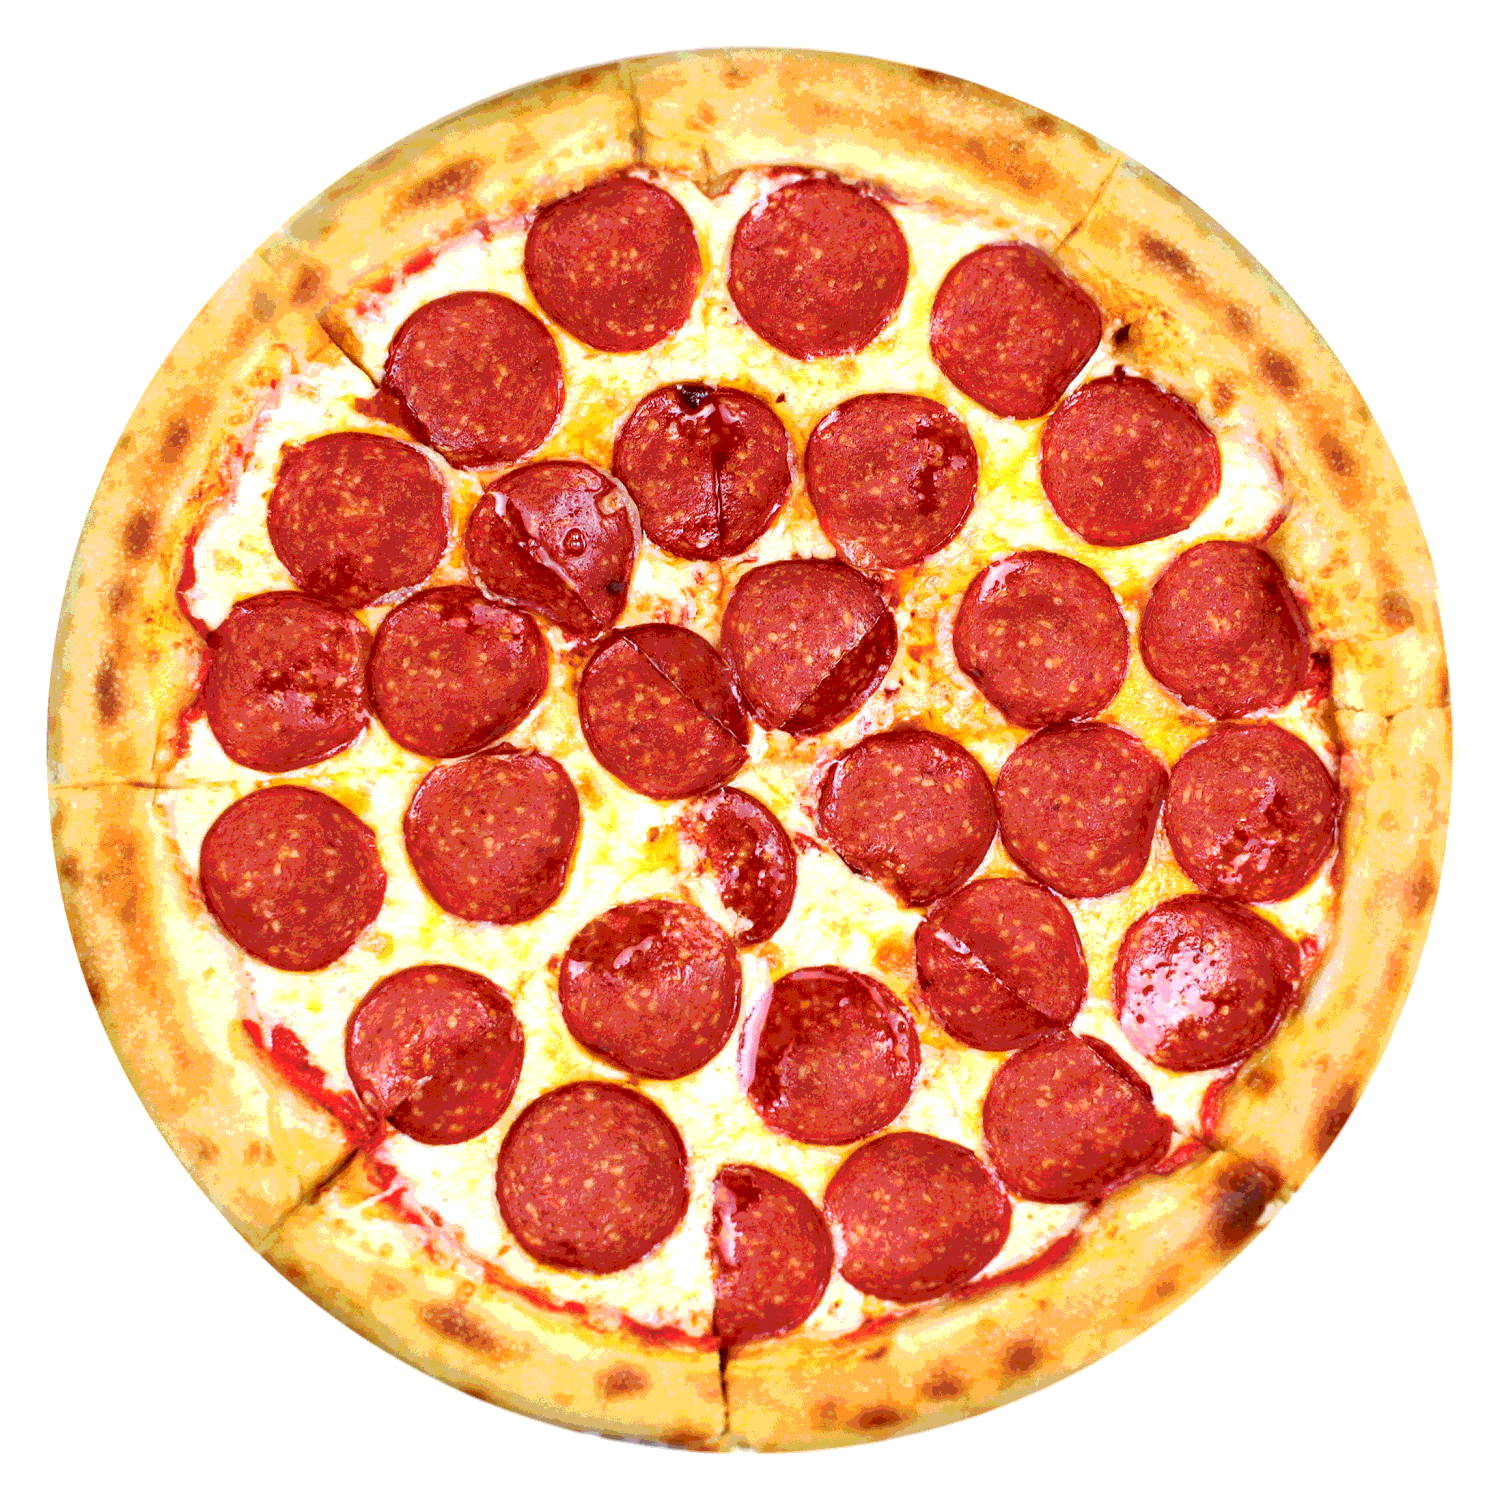 состав пиццы пепперони в домашних условиях фото 54